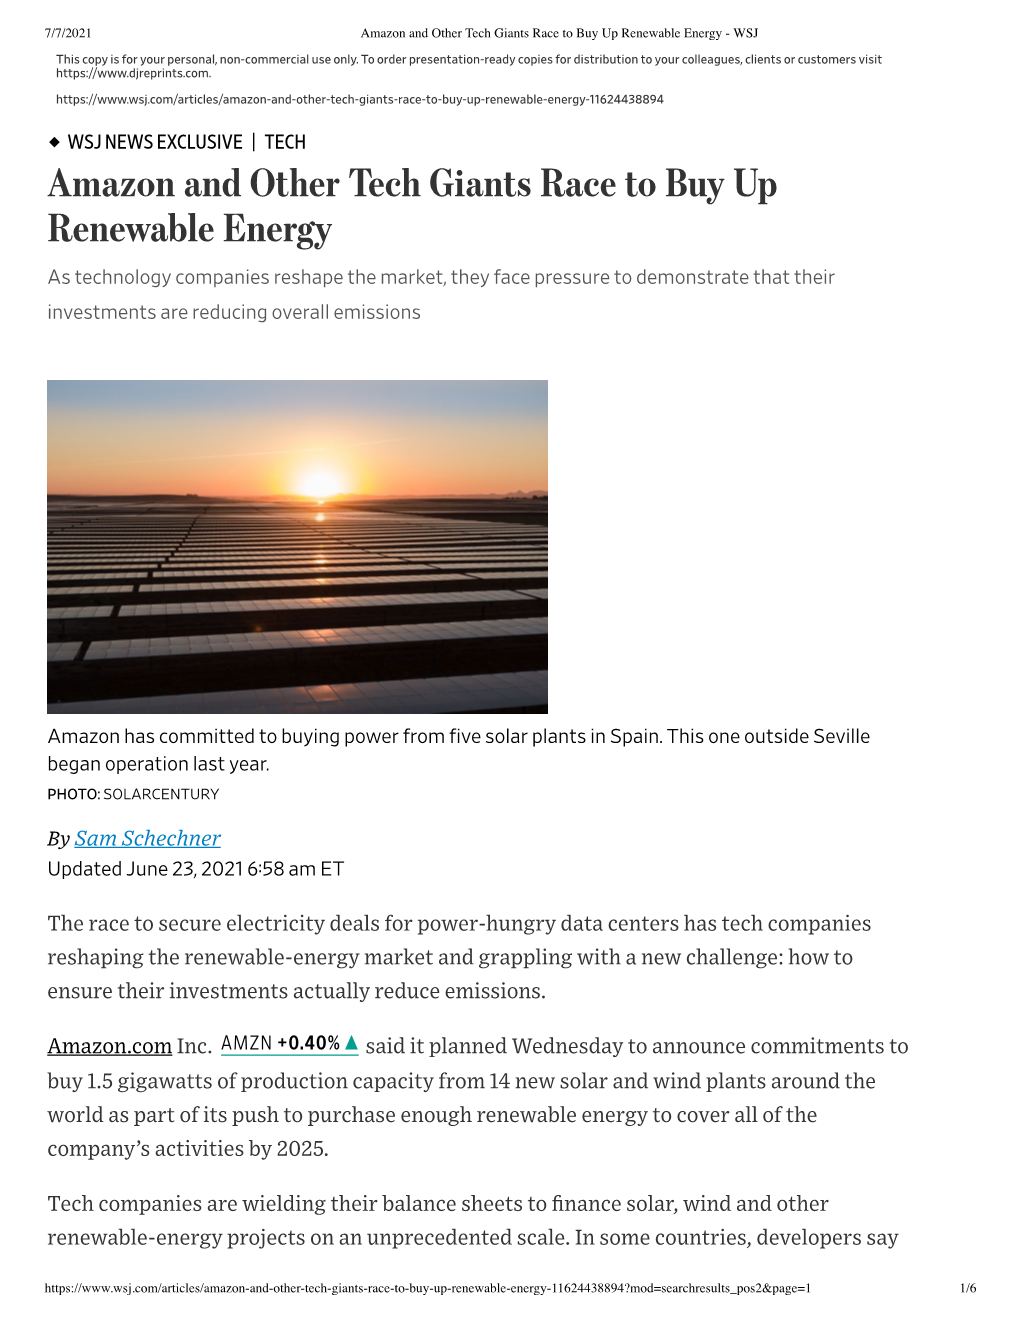 Amazon and Other Tech Giants Race to Buy up Renewable Energy - WSJ